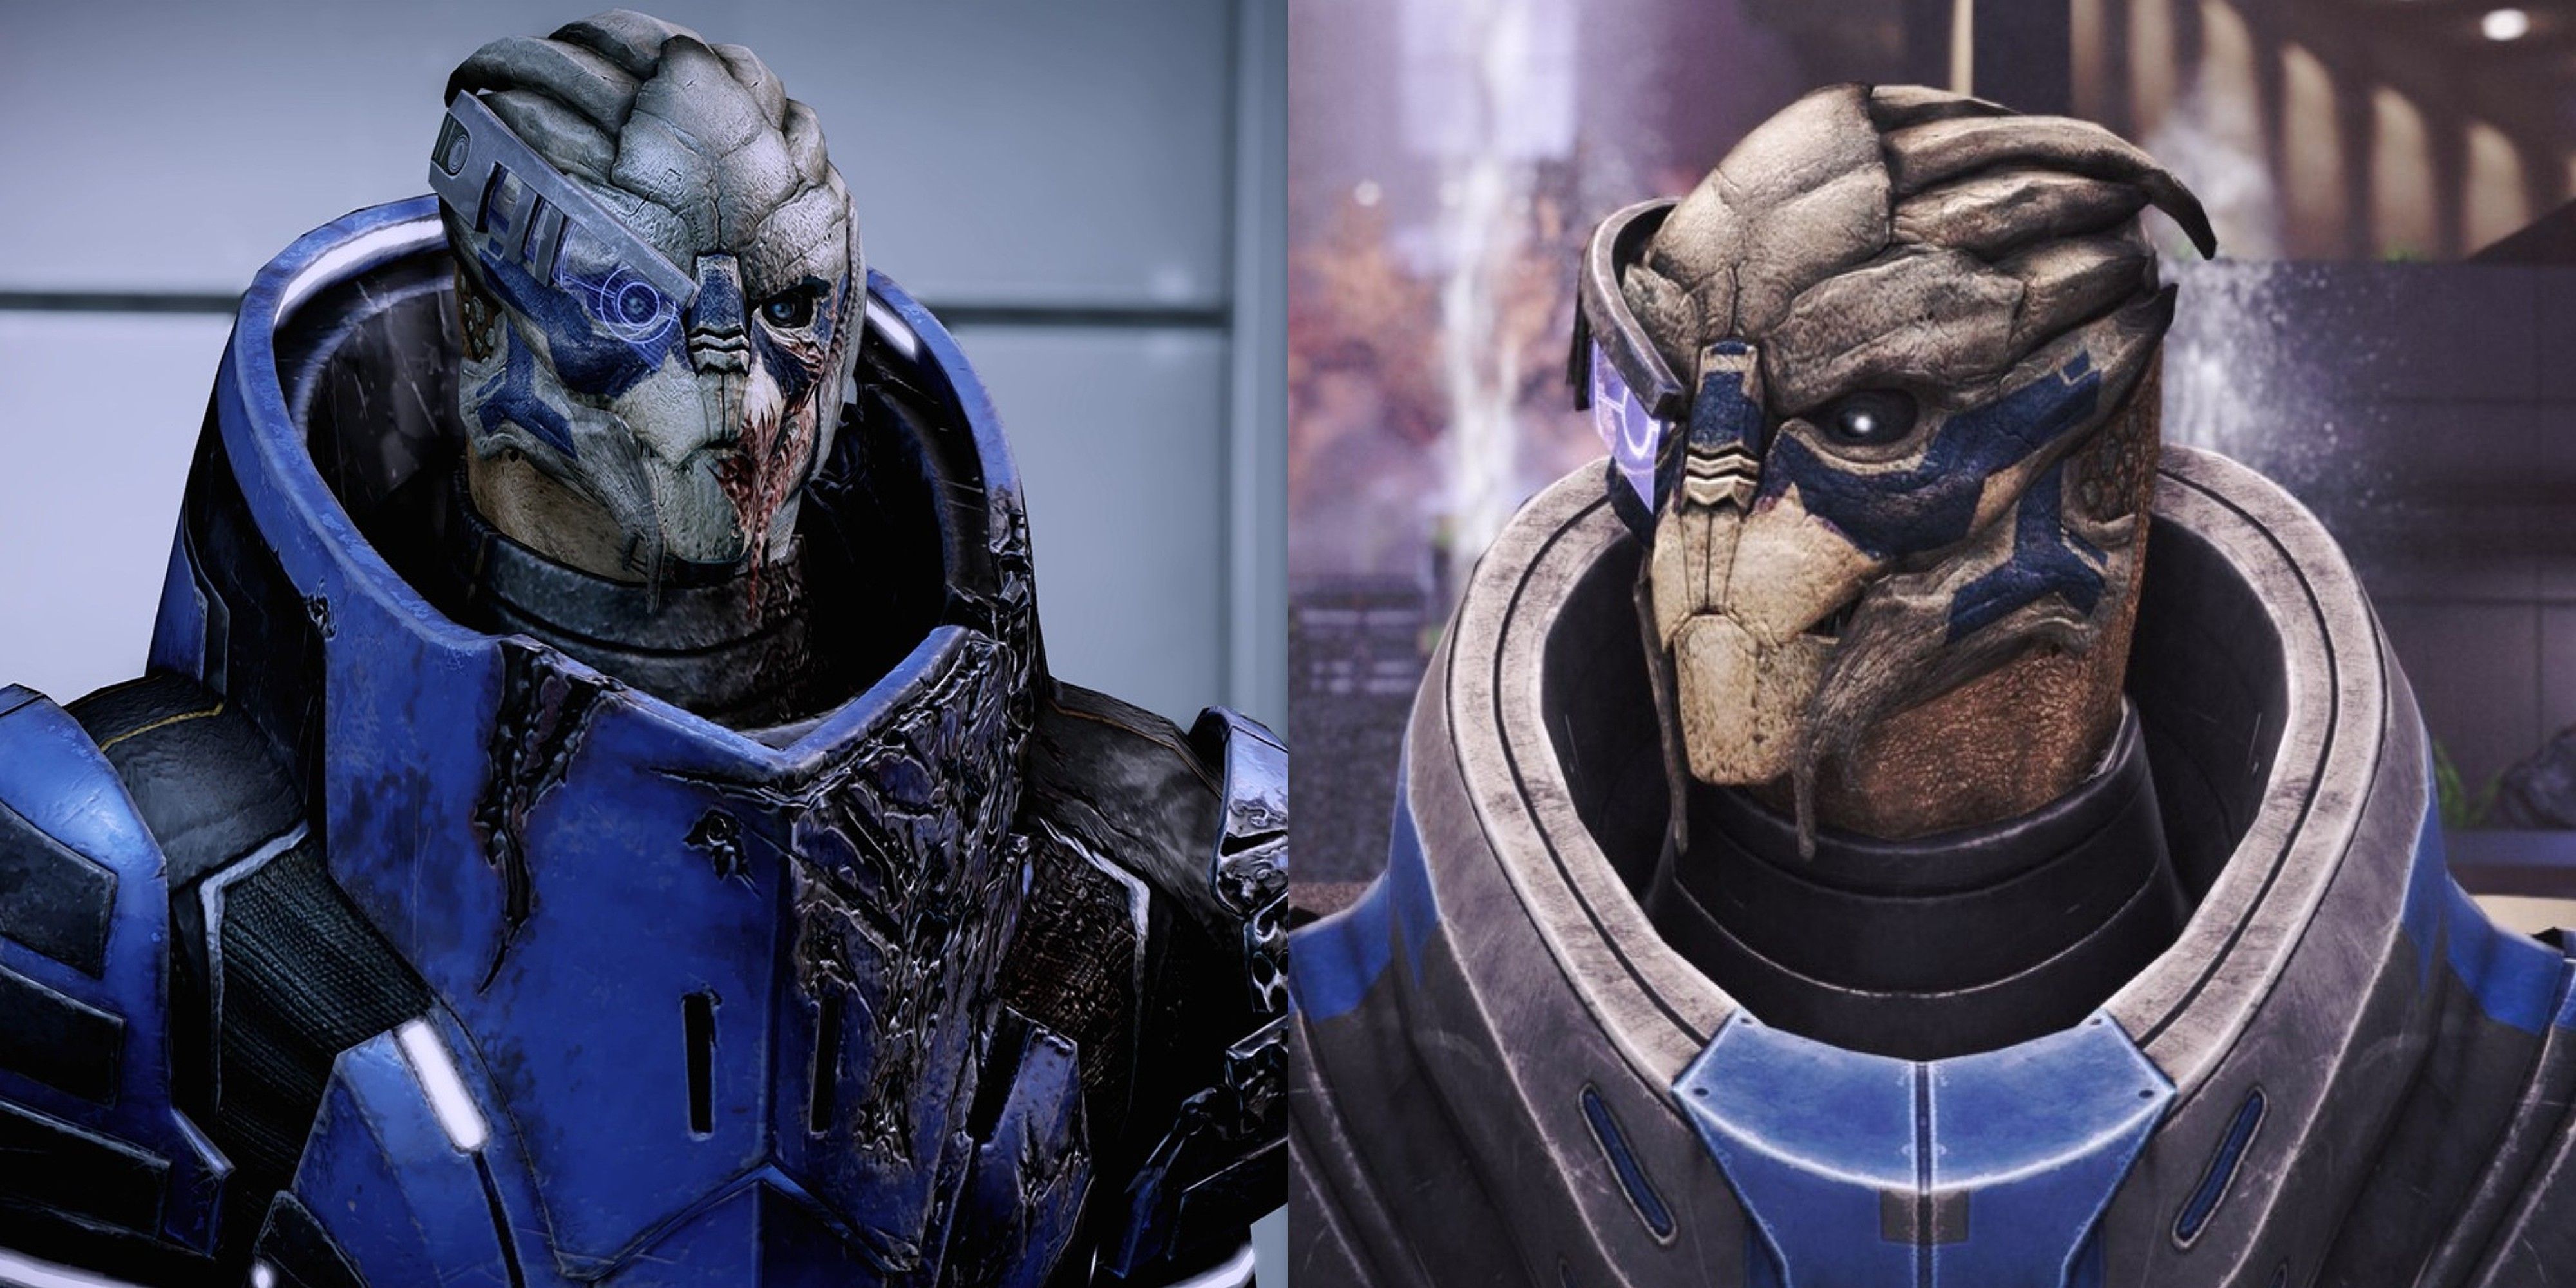 Garrus Vakarian in Mass Effect 2 and Mass Effect 3